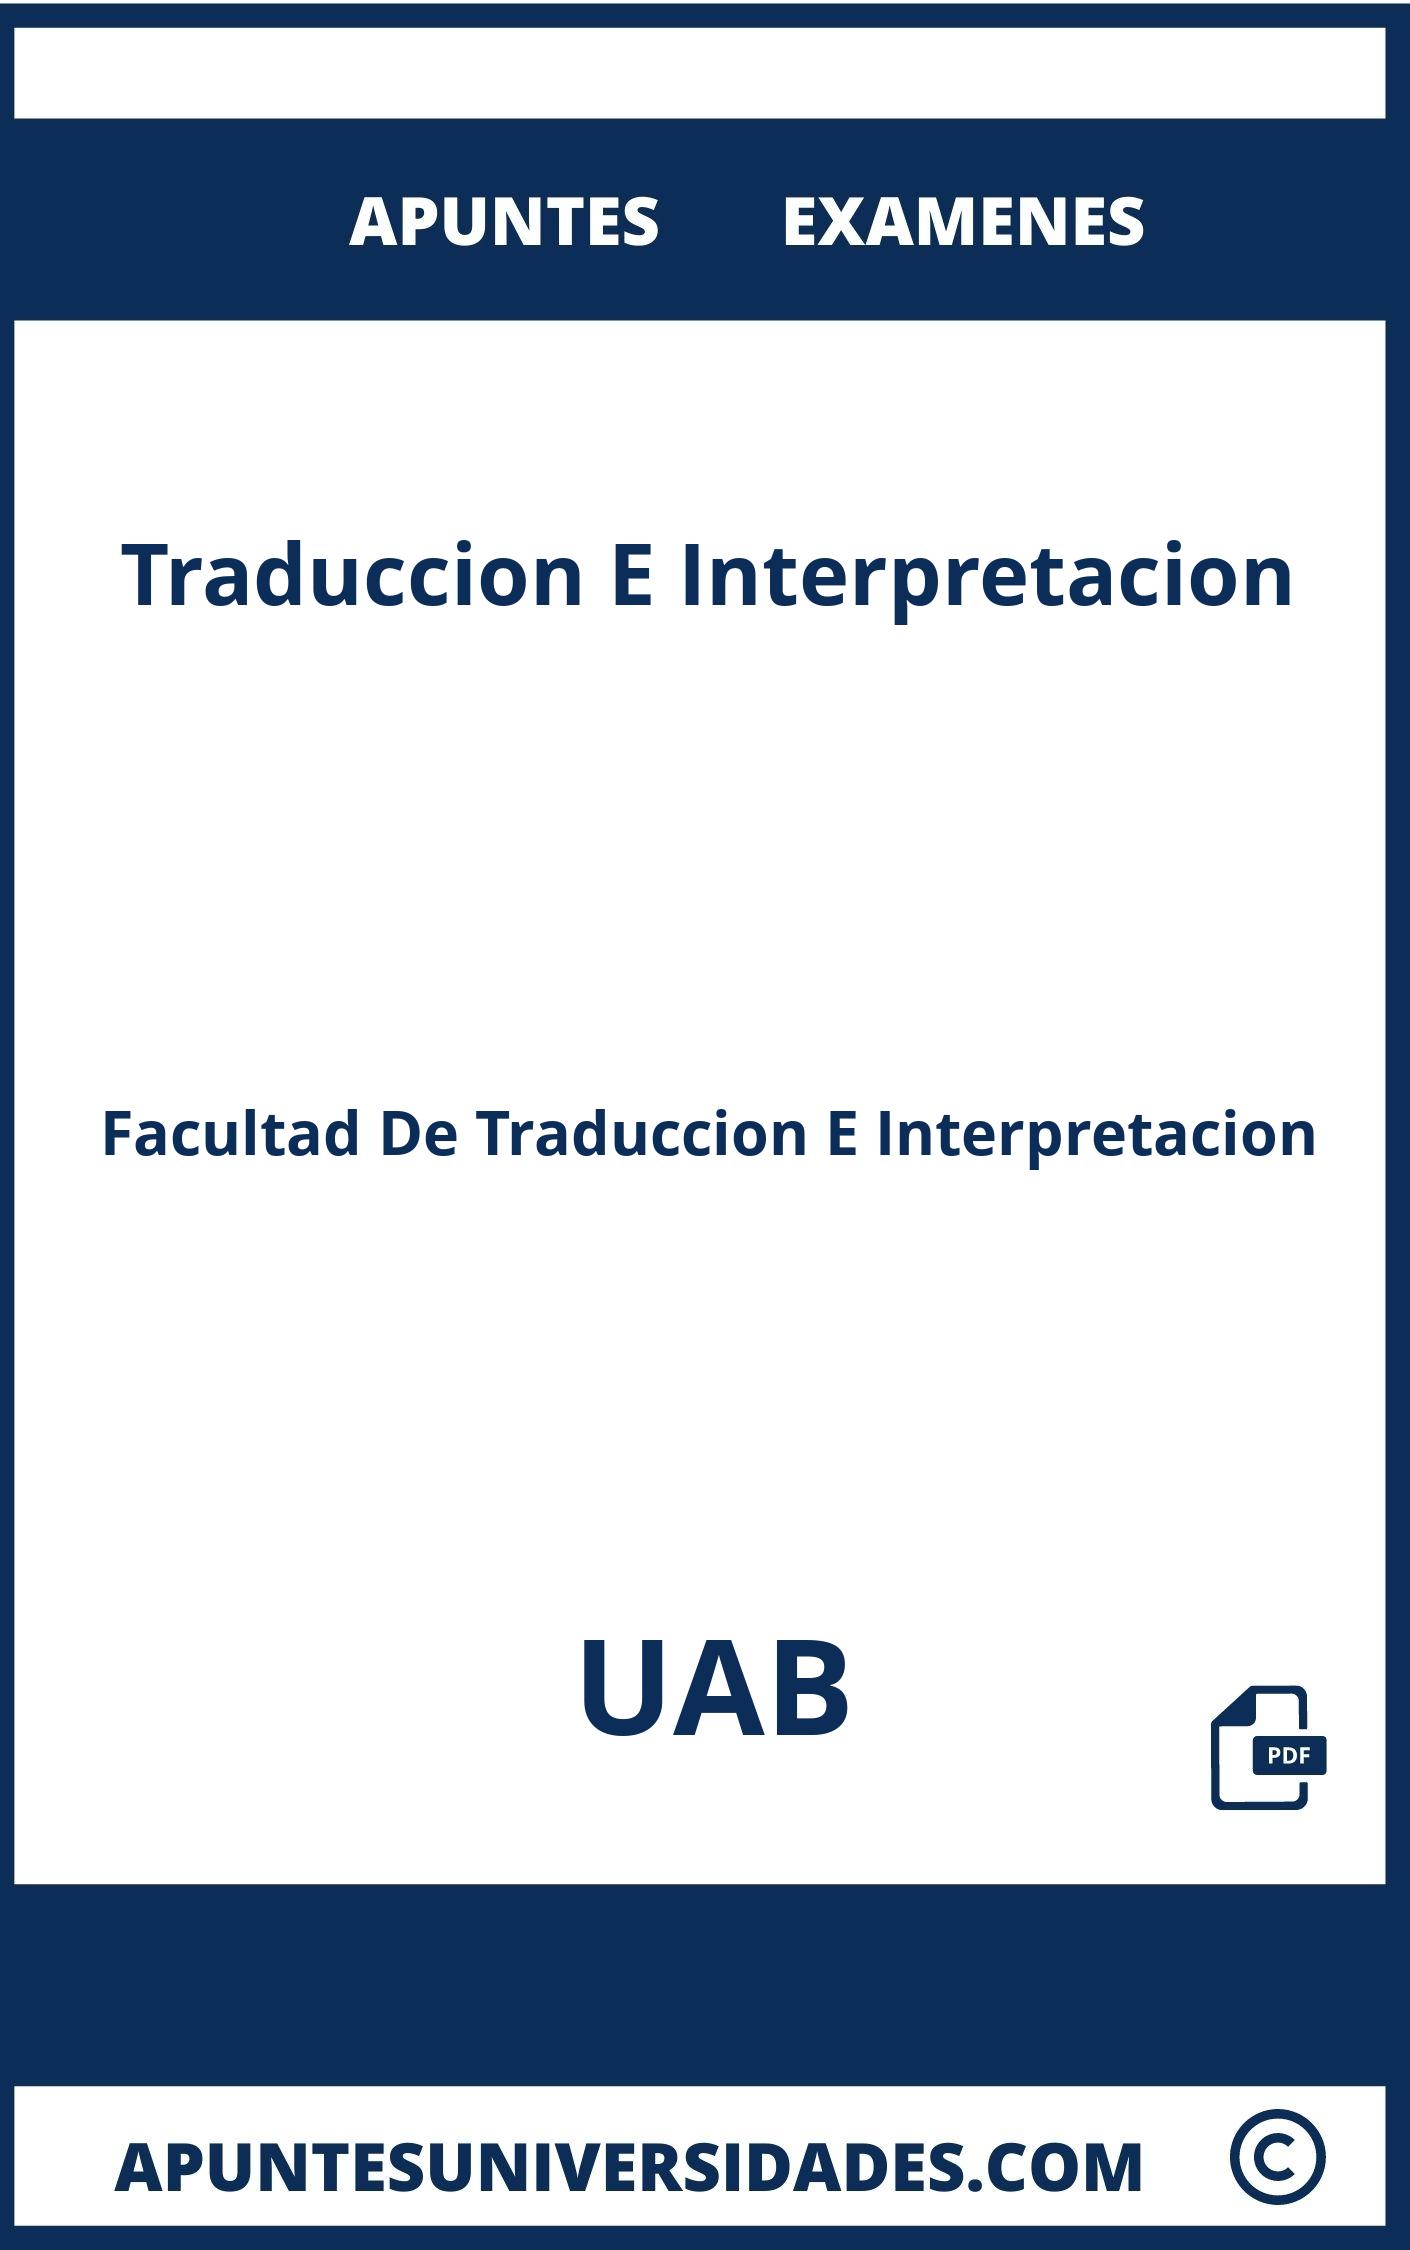 Traduccion E Interpretacion UAB Examenes Apuntes